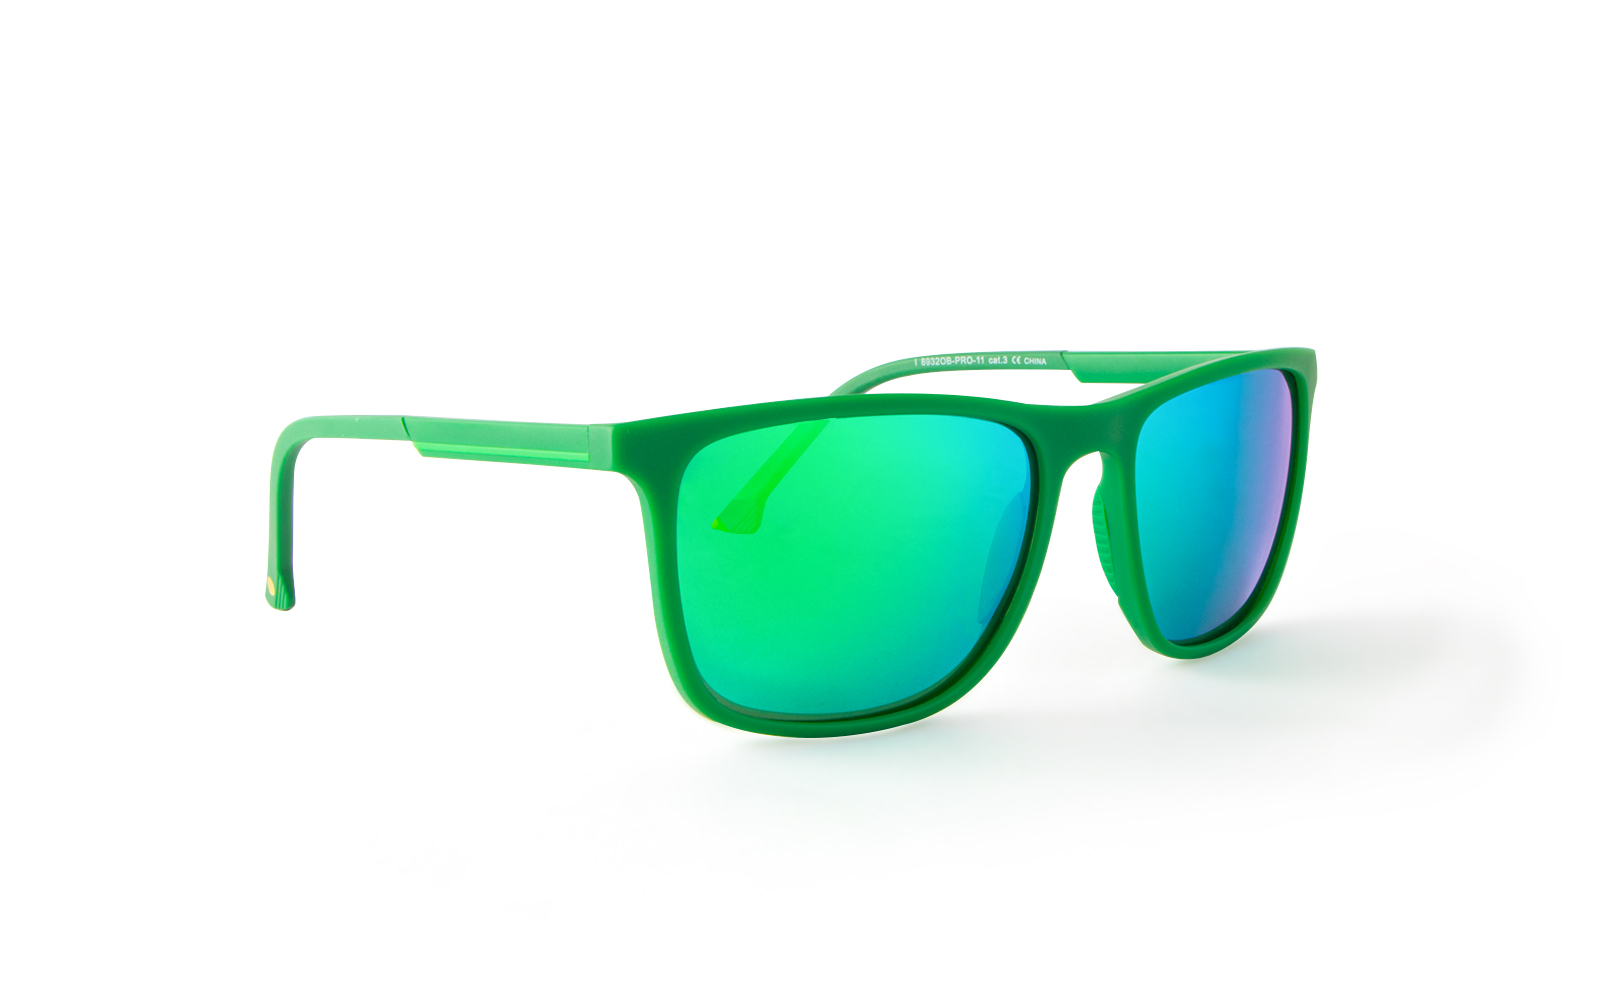 Invicta Men's Pro Diver Retro Square Sunglasses, Green (8932OB-PRO-11)